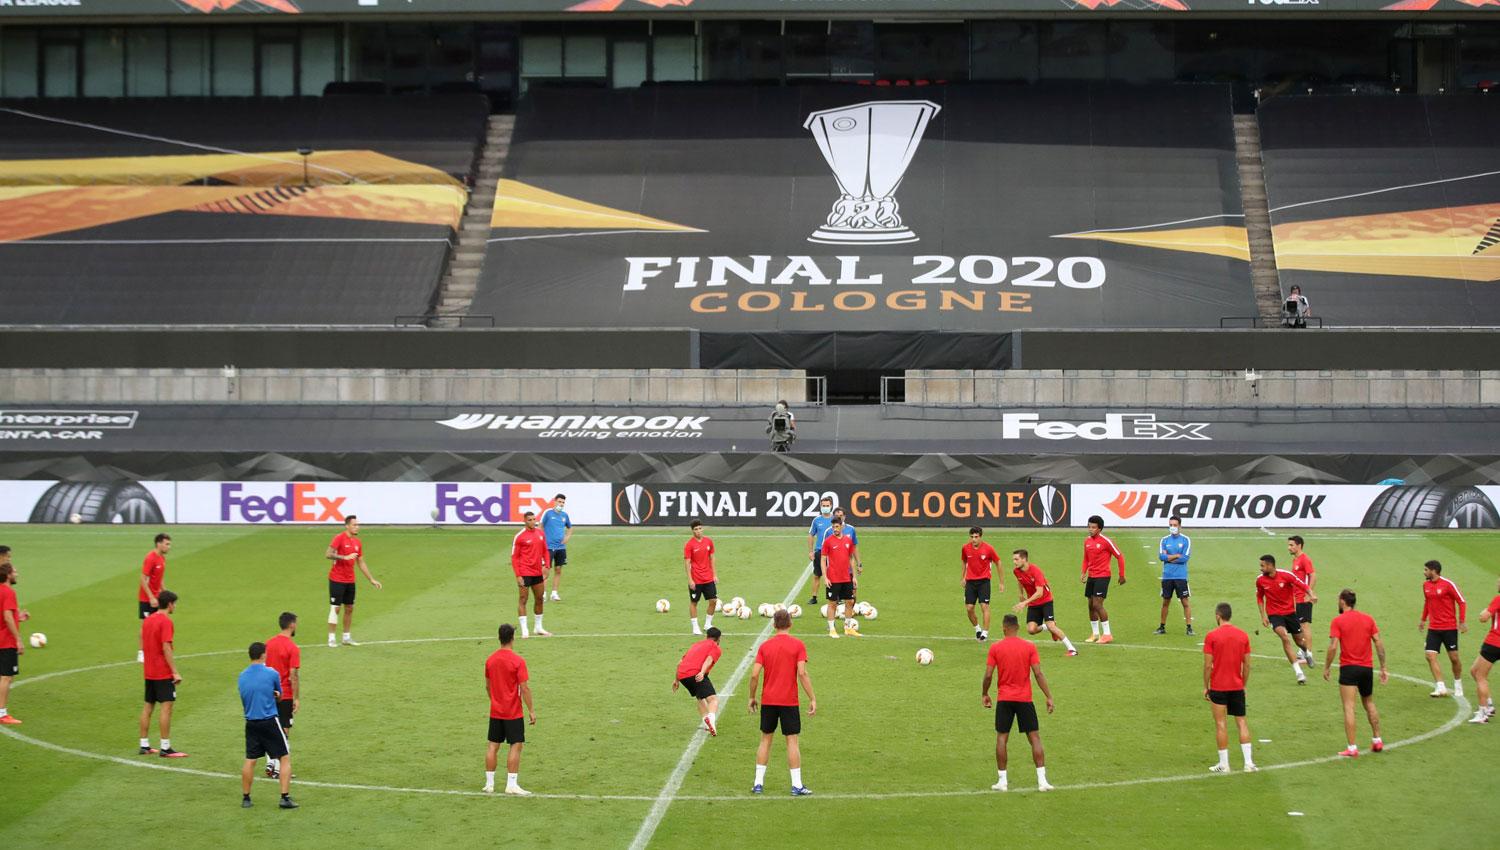 LISTO. Sevilla reconoció el estadio de Colonia, en donde definirá la final de la Liga de Europa.